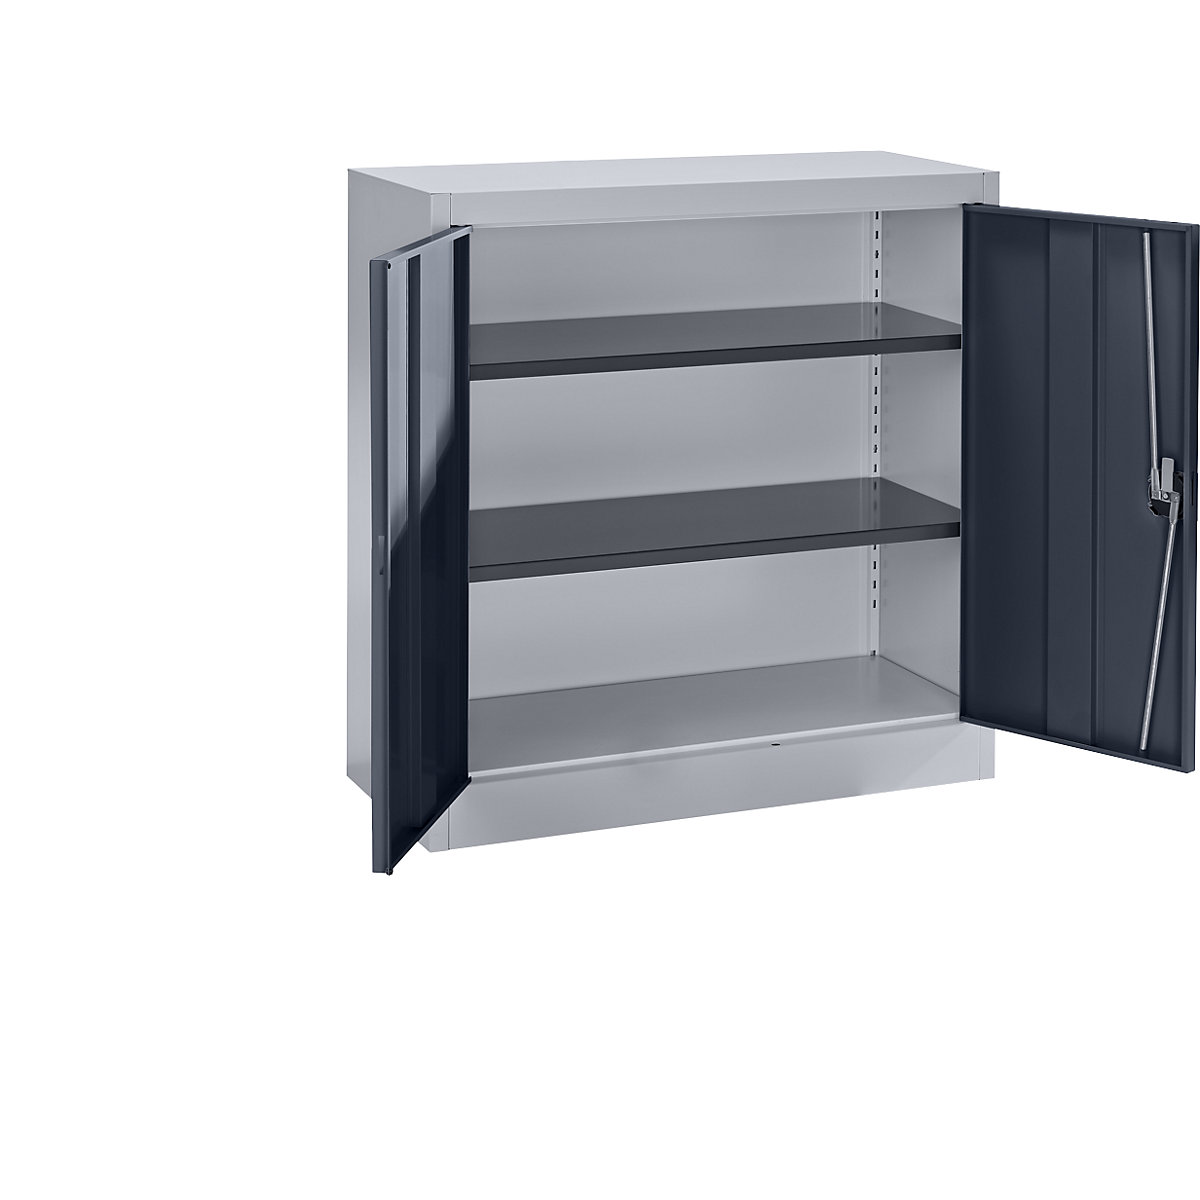 mauser – Oceľová skriňa s krídlovými dverami, 2 police, výška 1016 mm, strieborná / antracitová šedá